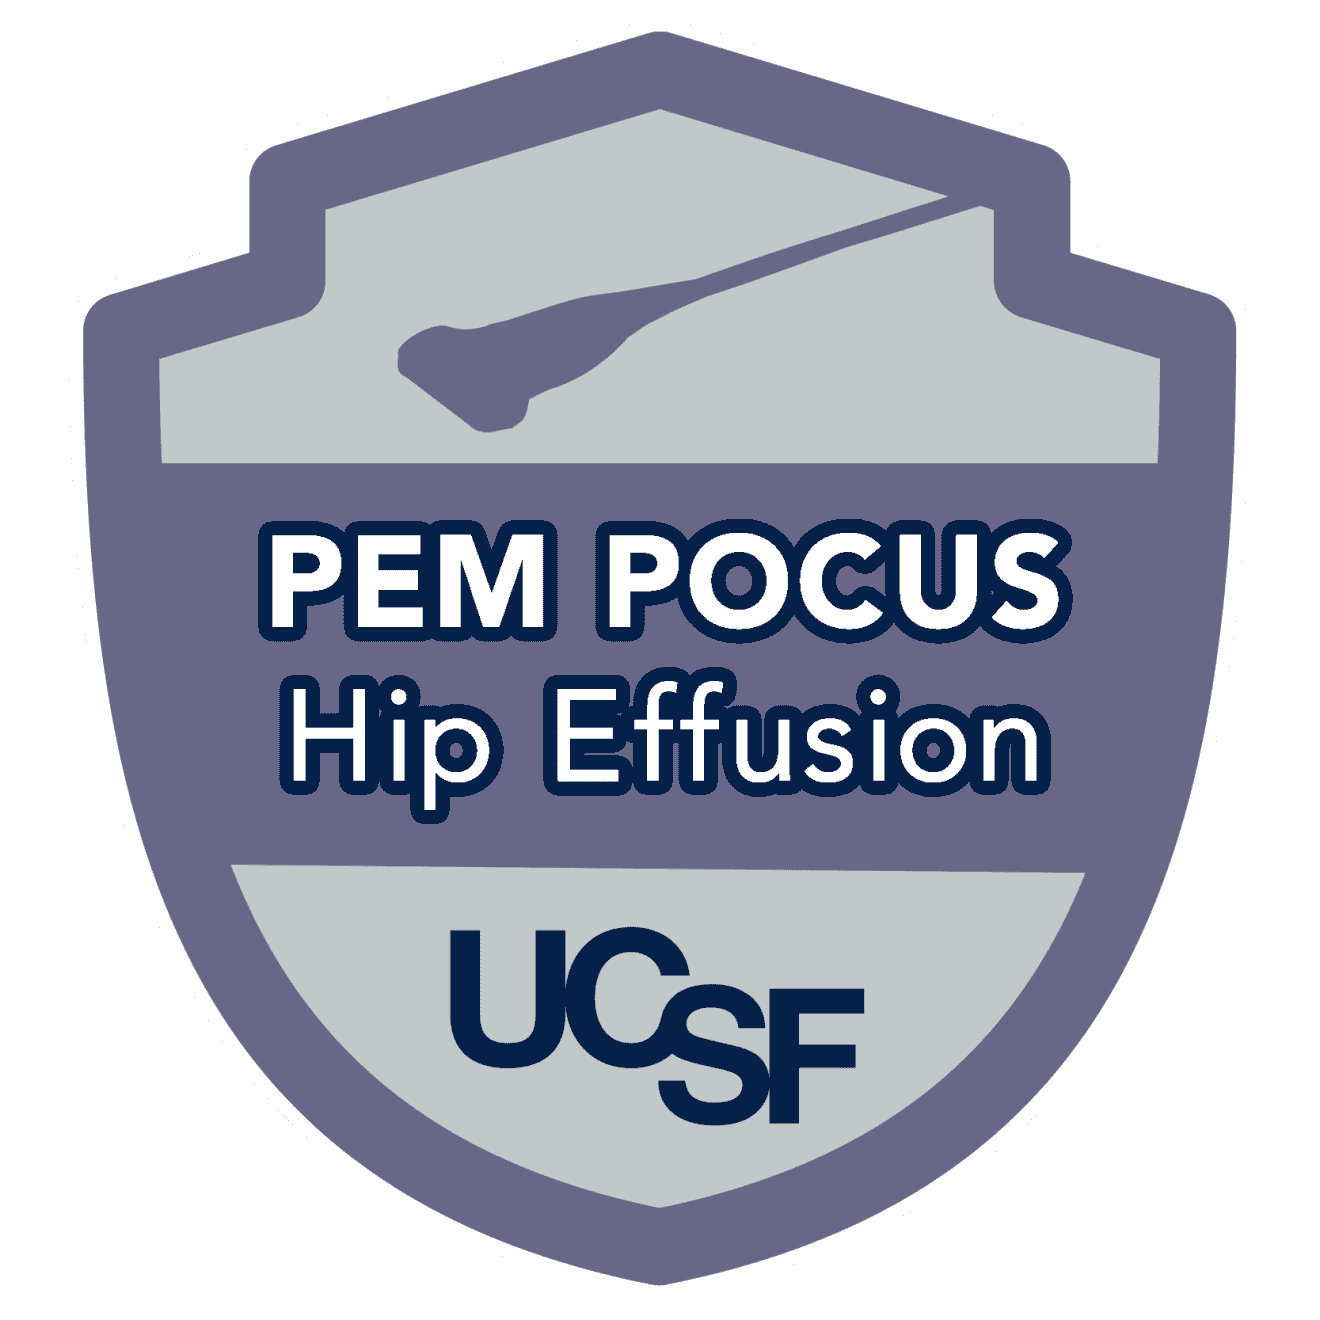 PEM POCUS Hip Effusion